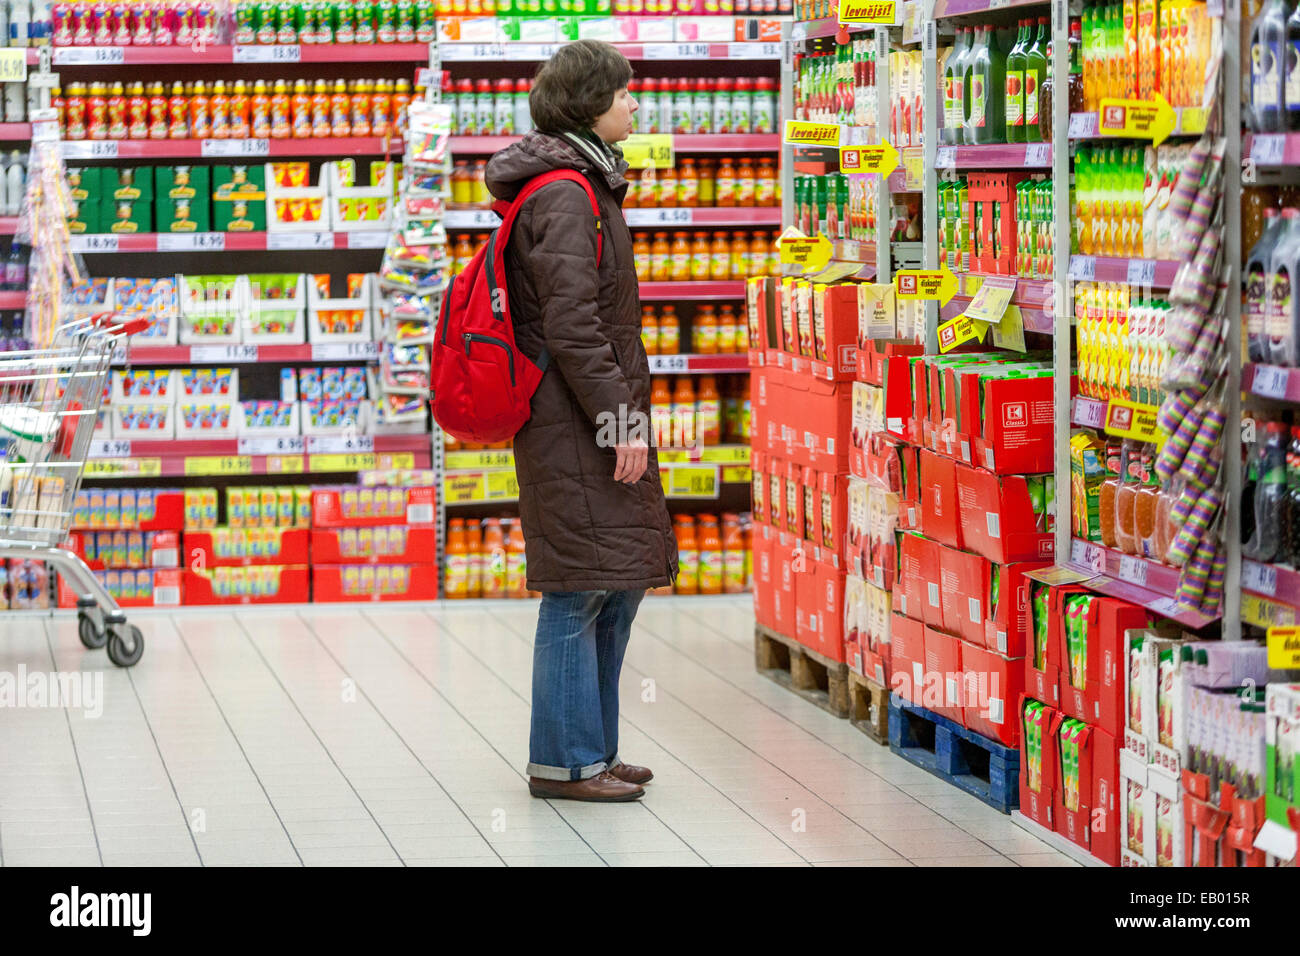 Les gens, la femme sélectionne des marchandises parmi les étagères, magasinant dans les étagères des supermarchés sans prix Banque D'Images